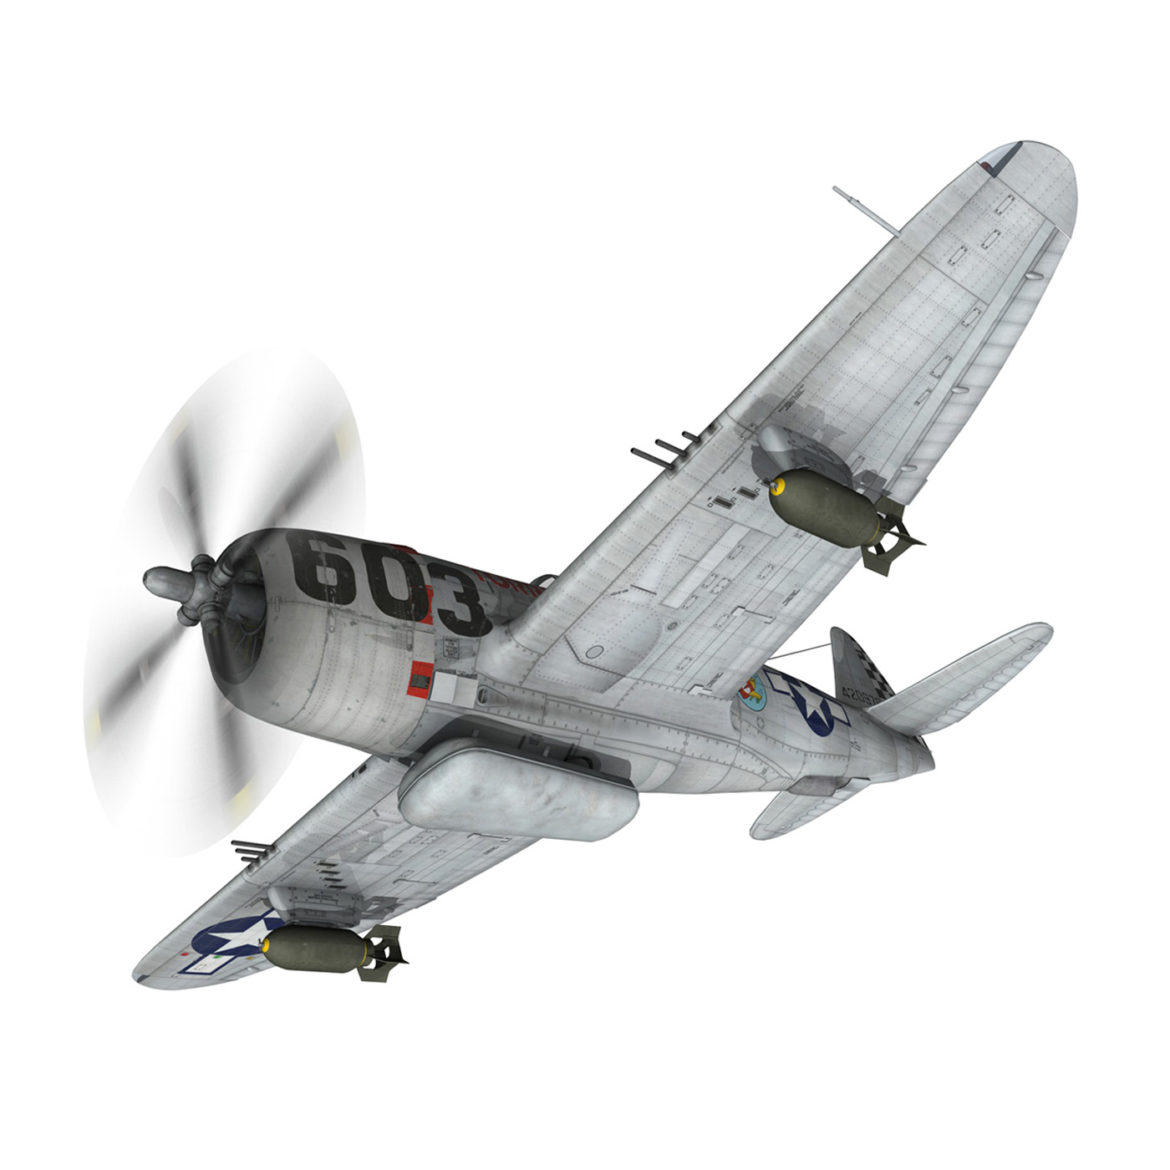 republic p-47d thunderbolt – torrid tessie 3d model 3ds c4d lwo lw lws obj fbx 303865